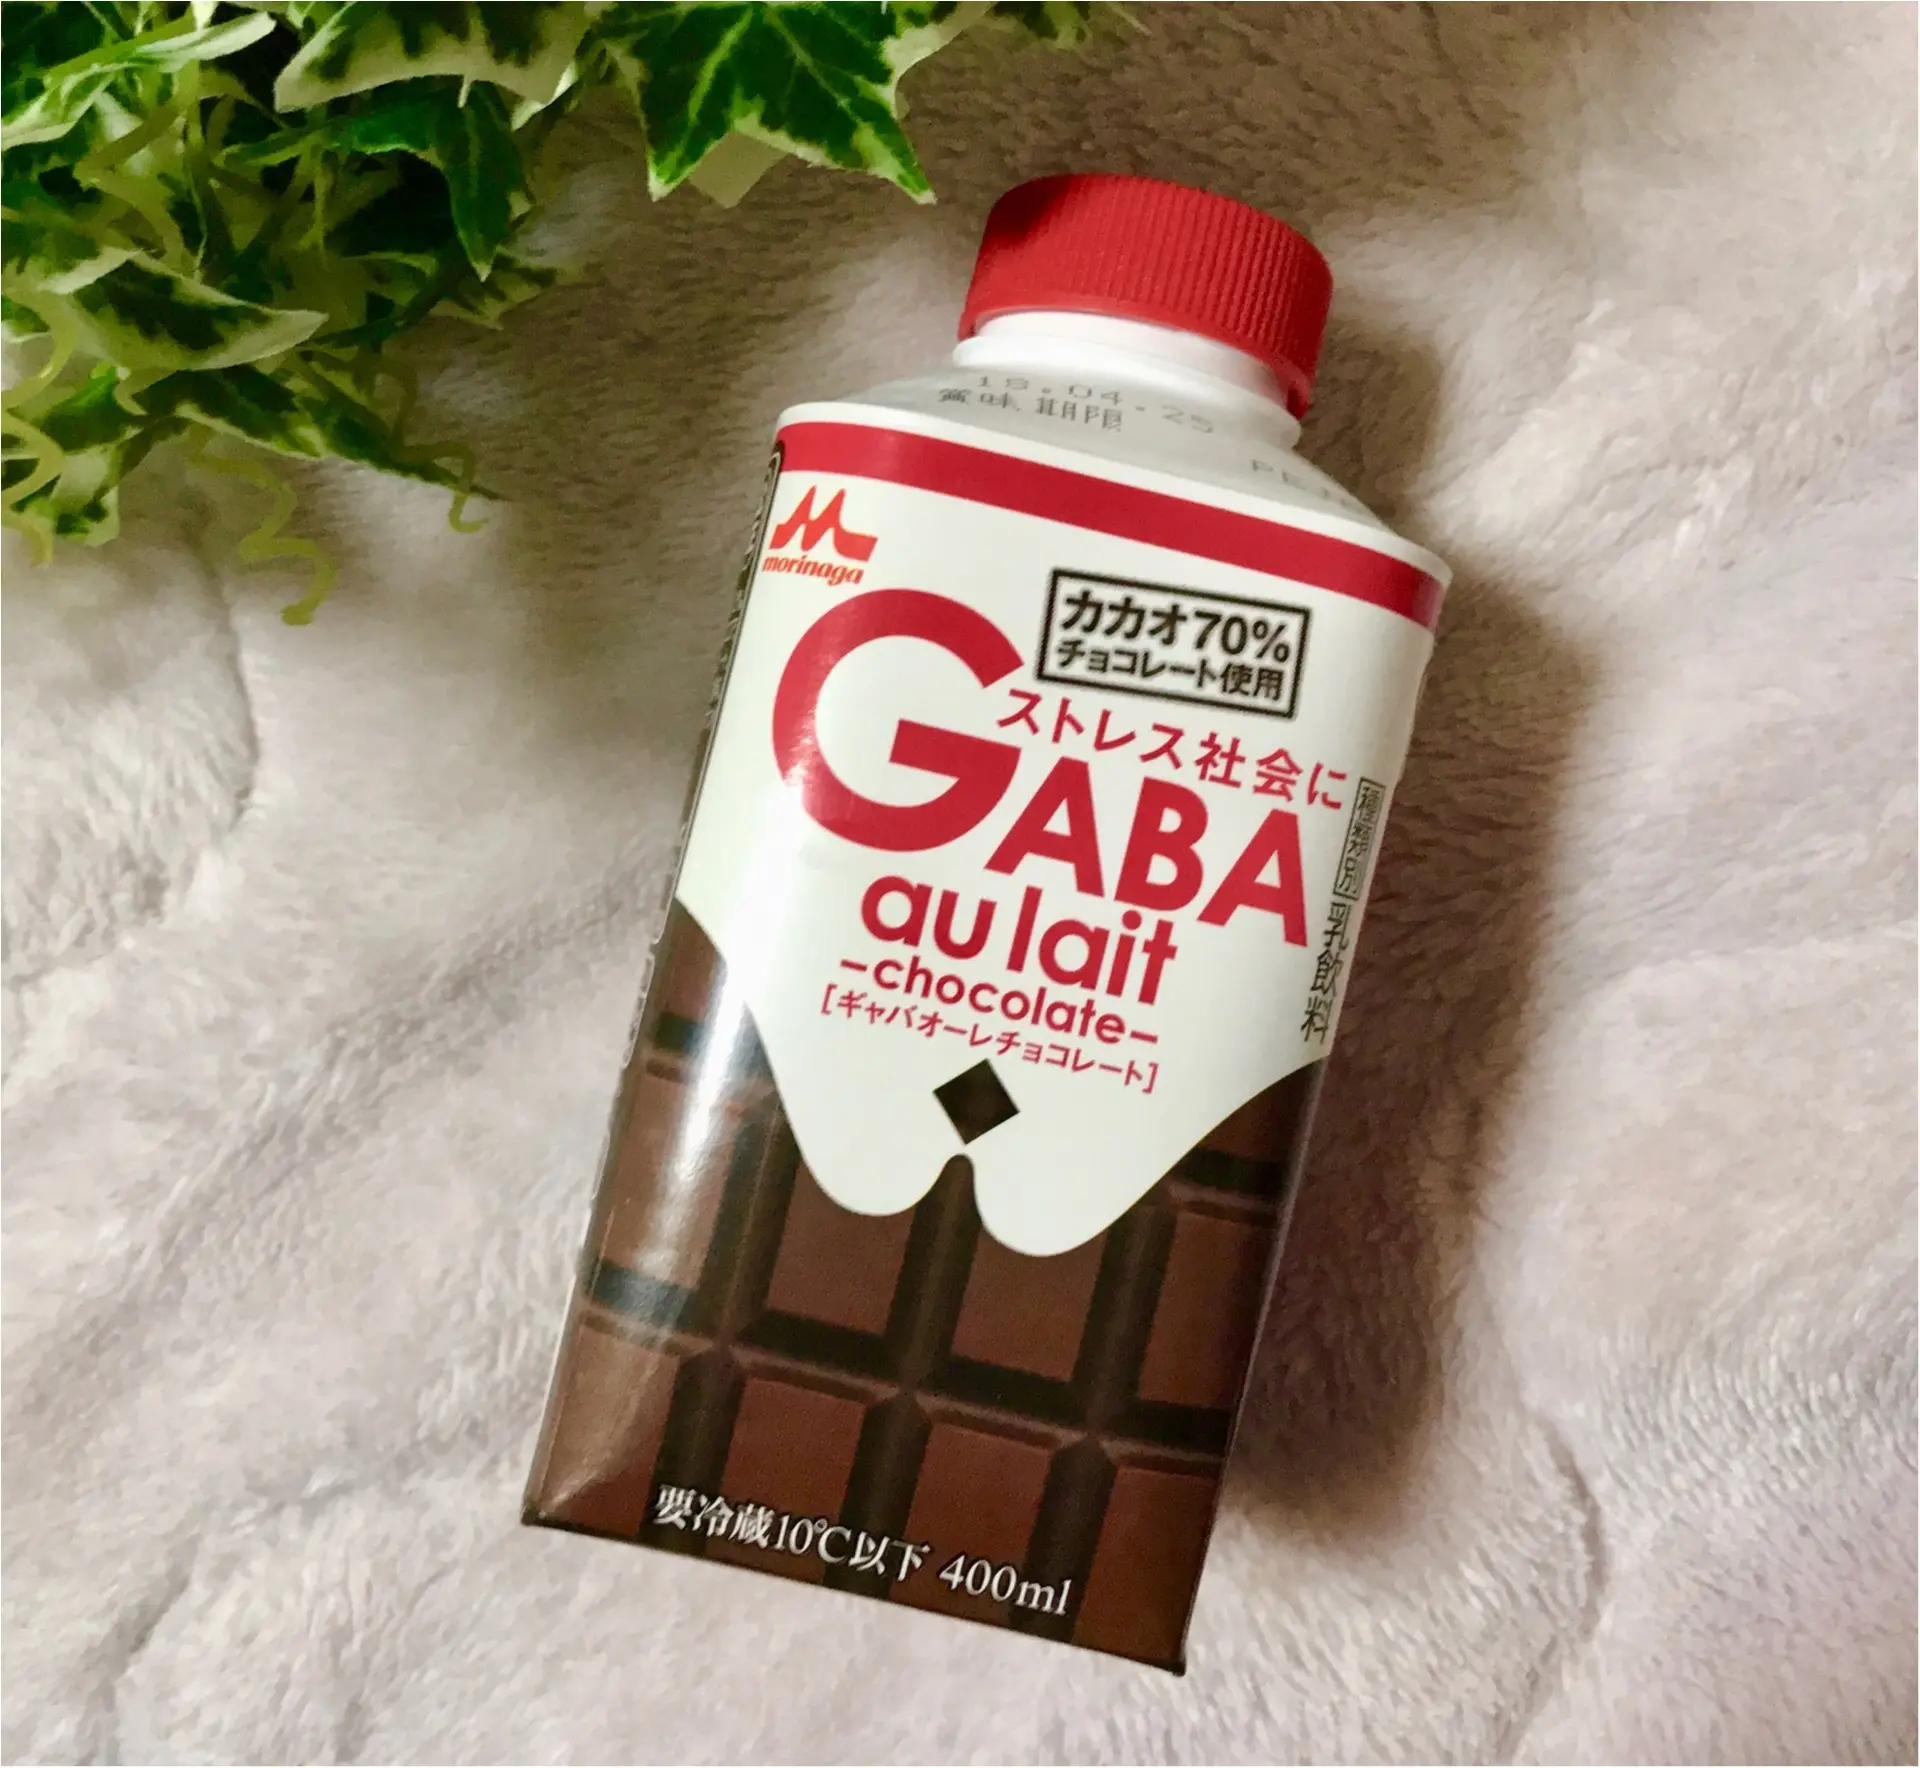 Gaba配合ドリンク ストレス対策にぴったり Gaba Au Lait が新登場 カカオ分70 チョコレートでひと息つきましょう Moreインフルエンサーズブログ Daily More